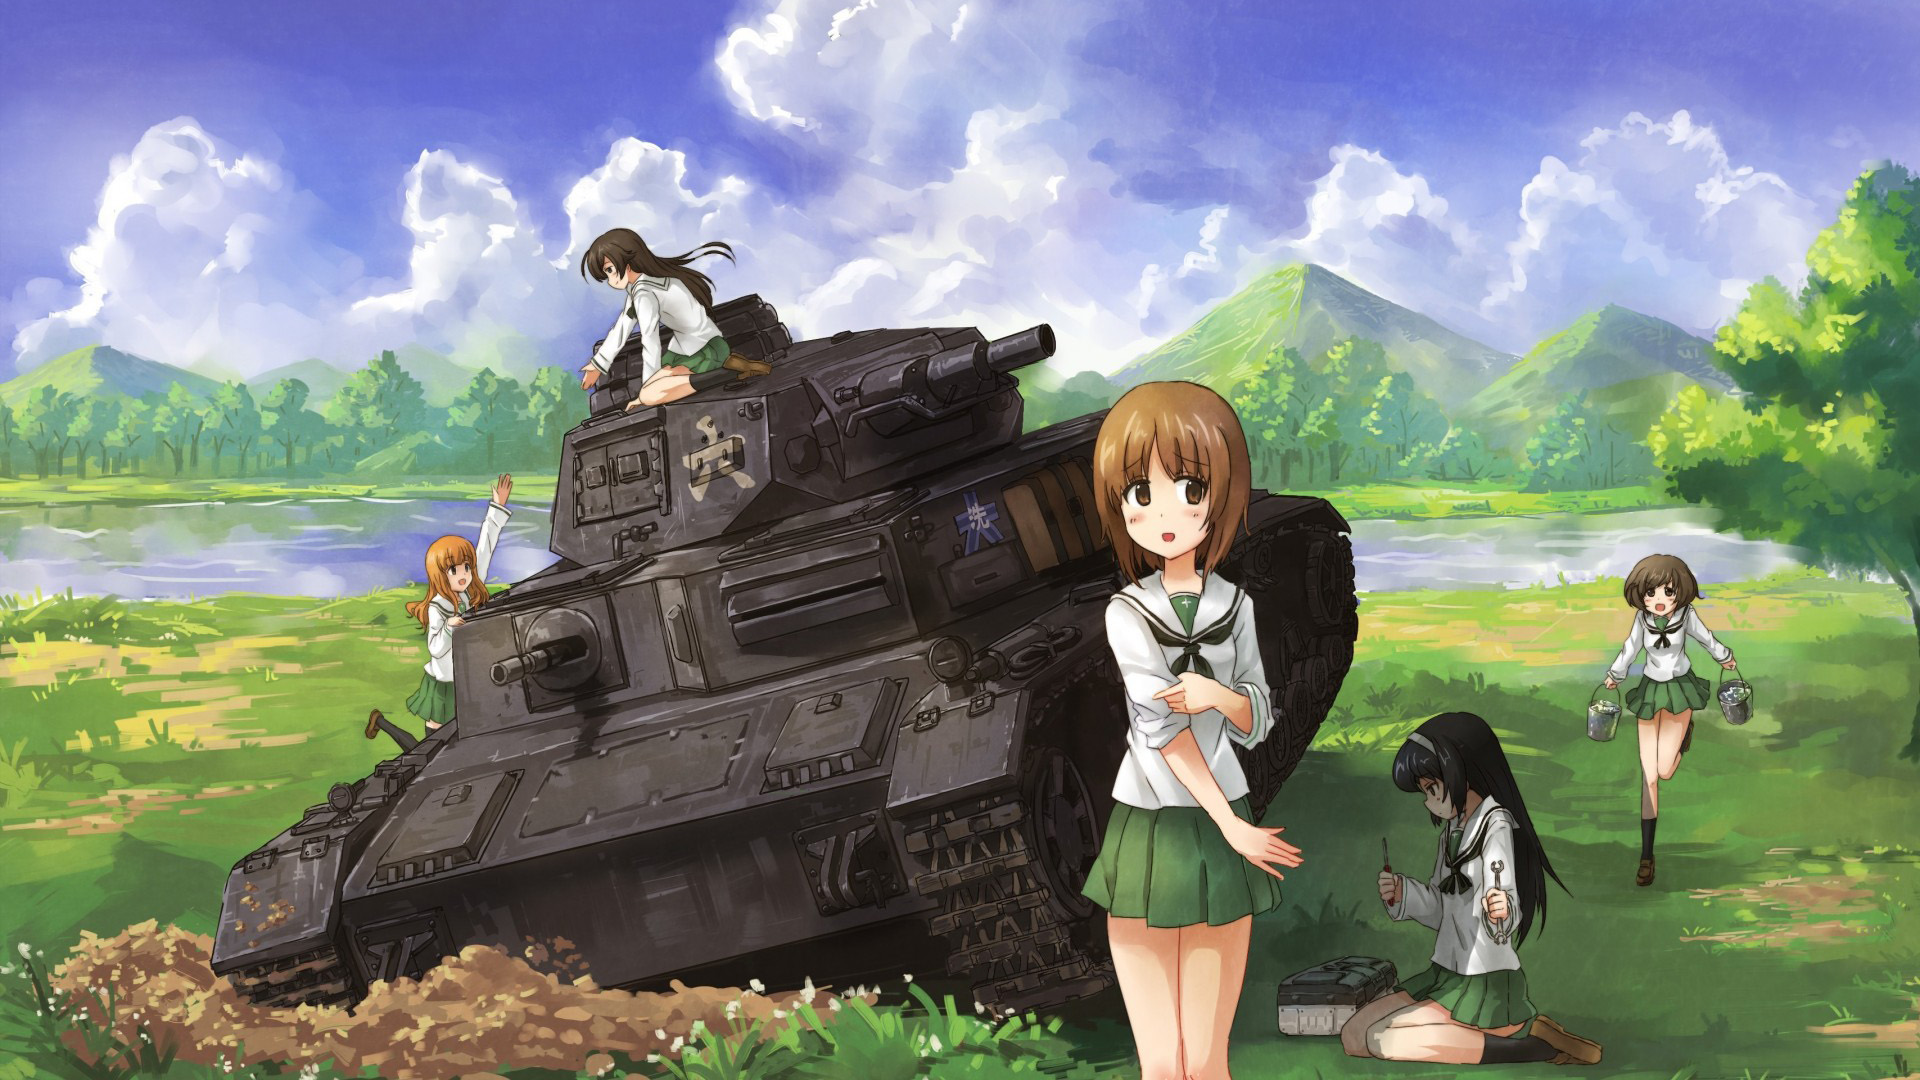 可爱动漫女孩和坦克,漂亮风景壁纸